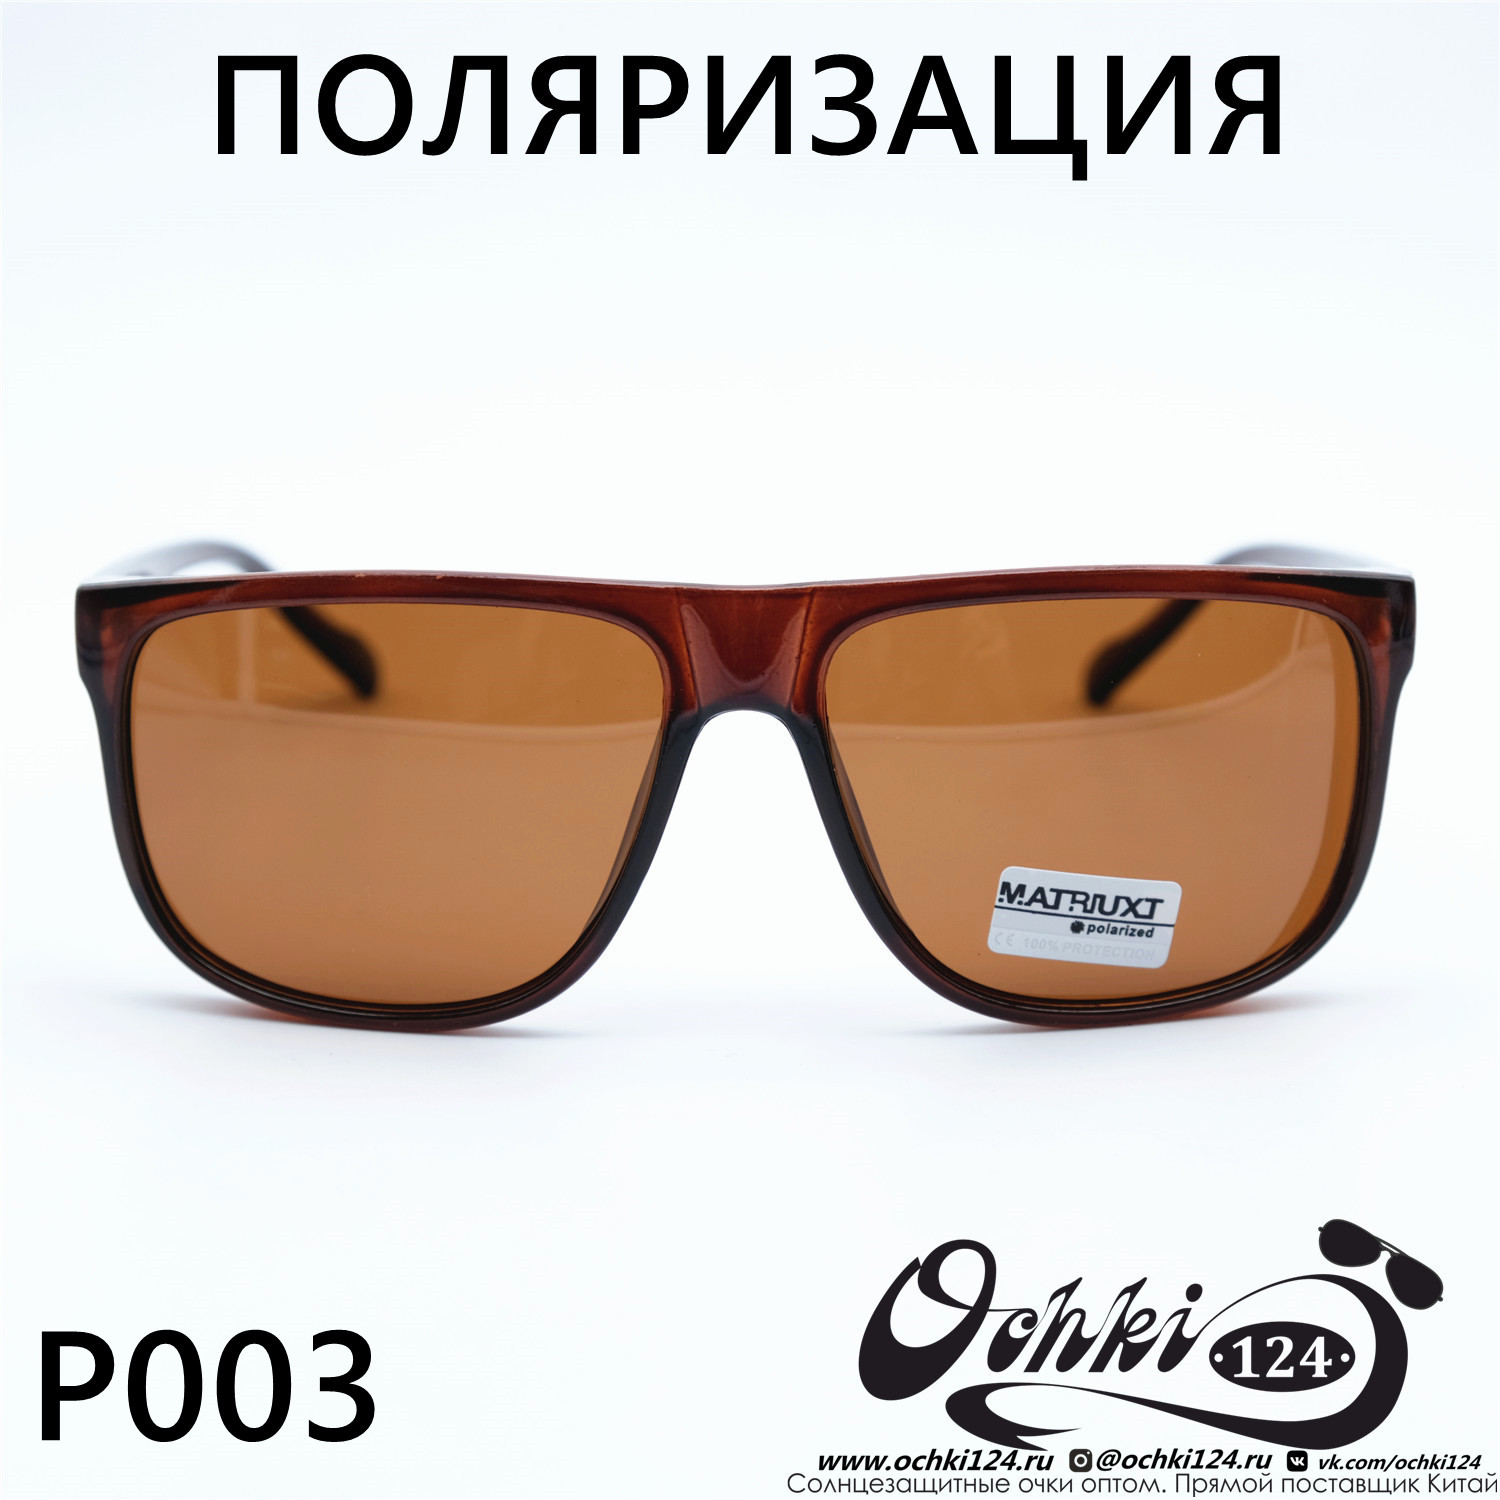  Солнцезащитные очки картинка Мужские MATRIUXT  Квадратные P003-C4 